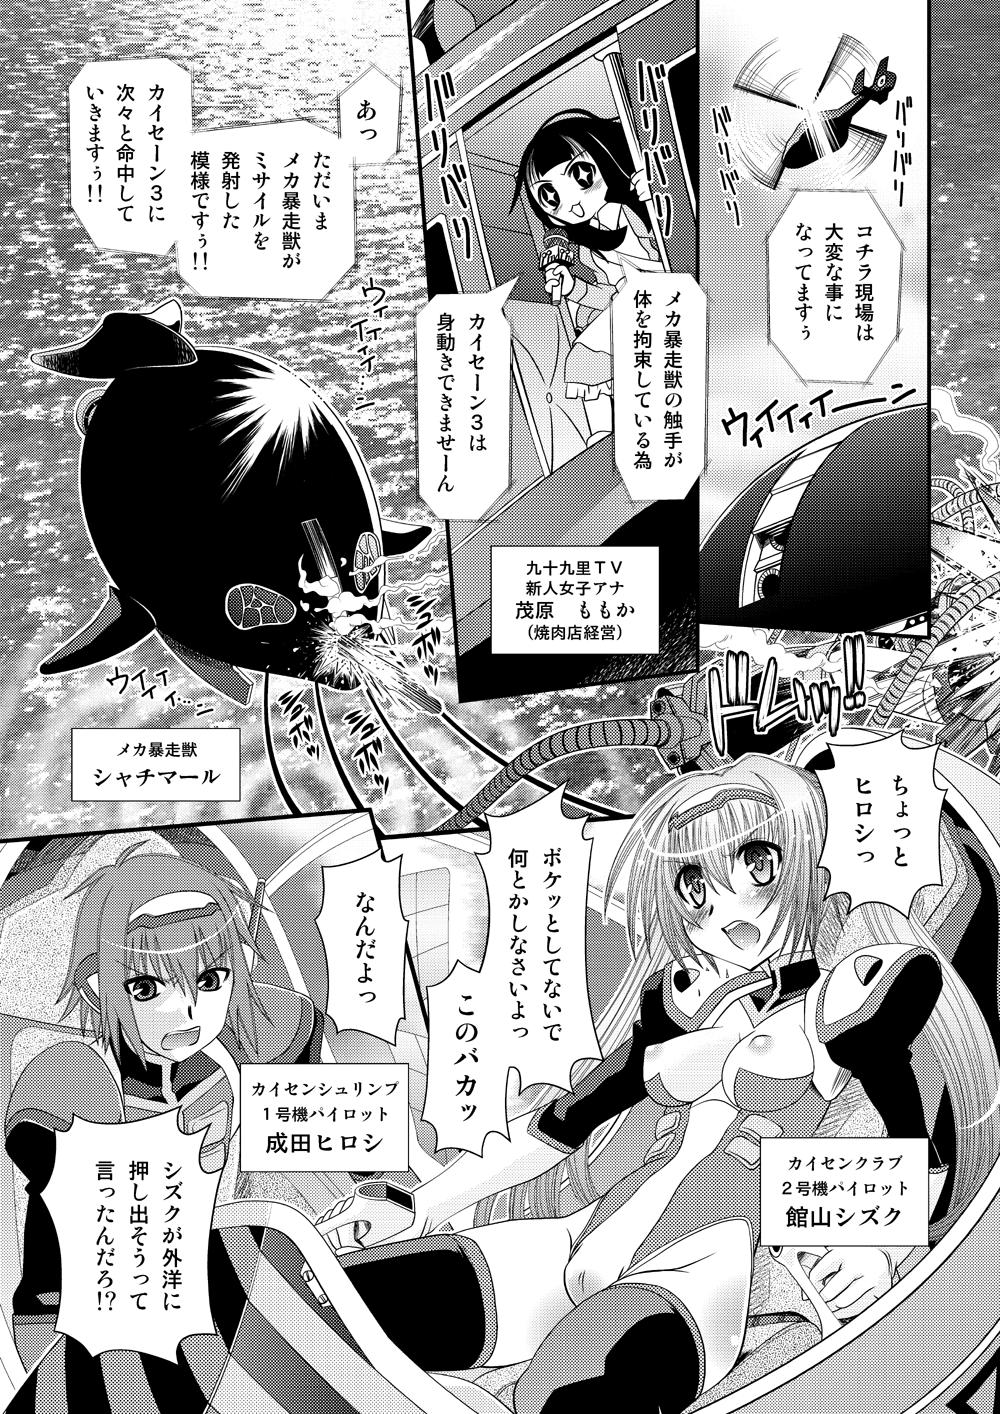 Spy Muteki Uminchu Kaisen 3 Lick - Page 1